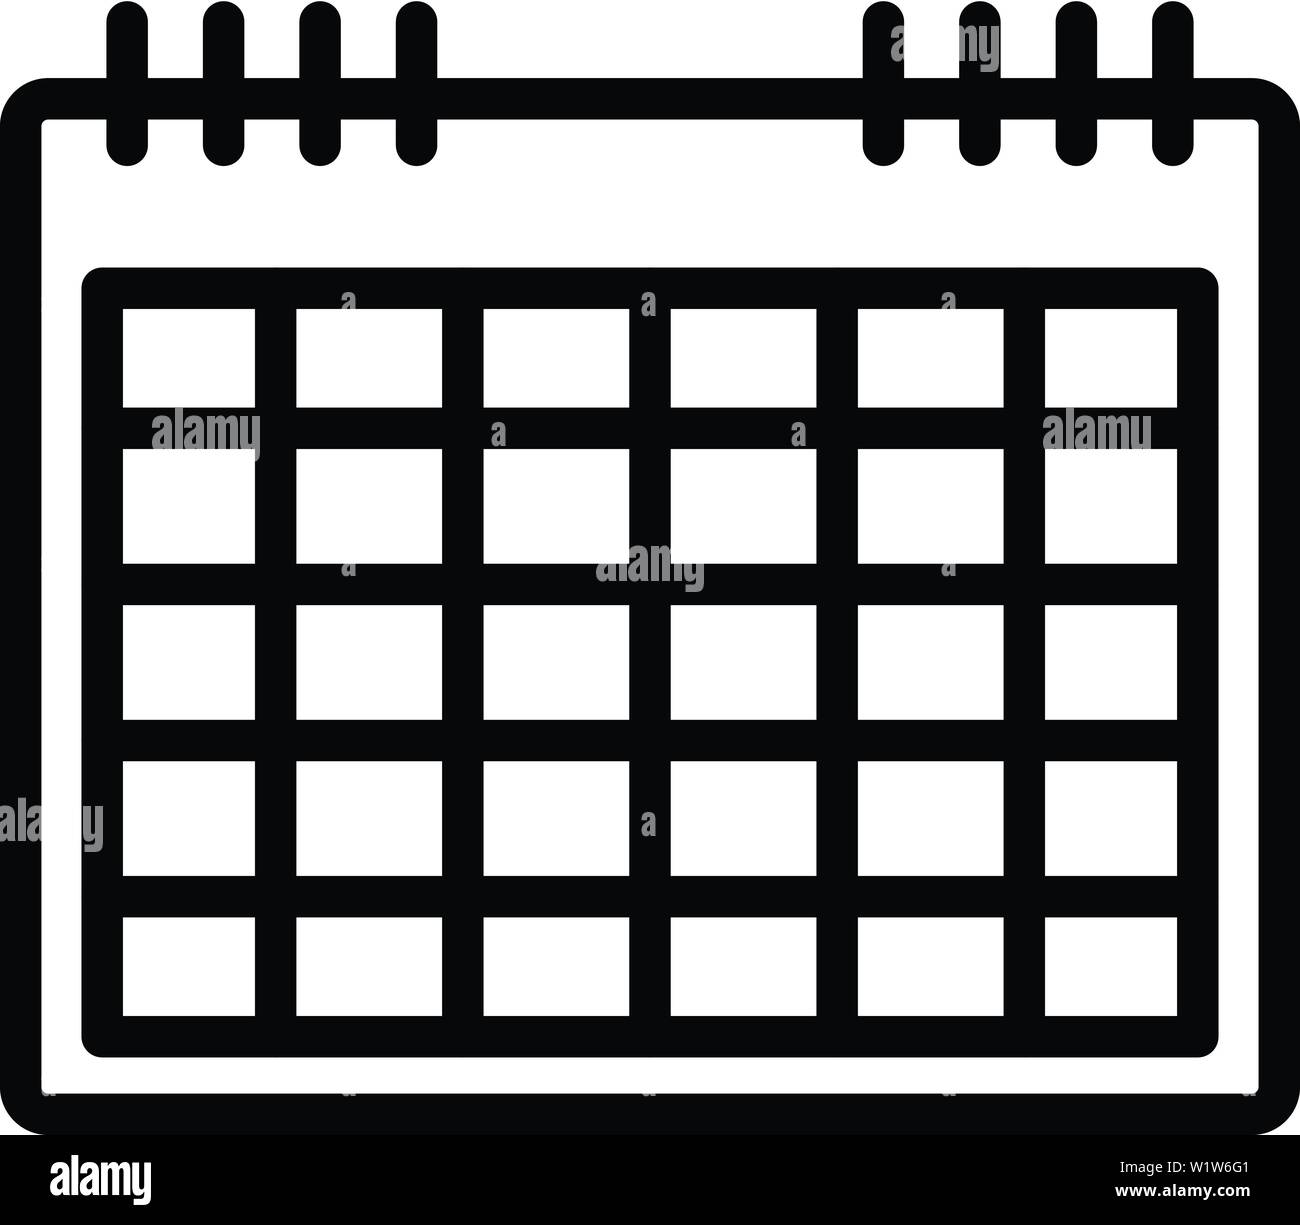 Griglia del calendario, l'icona di stile di contorno Immagine e Vettoriale  - Alamy